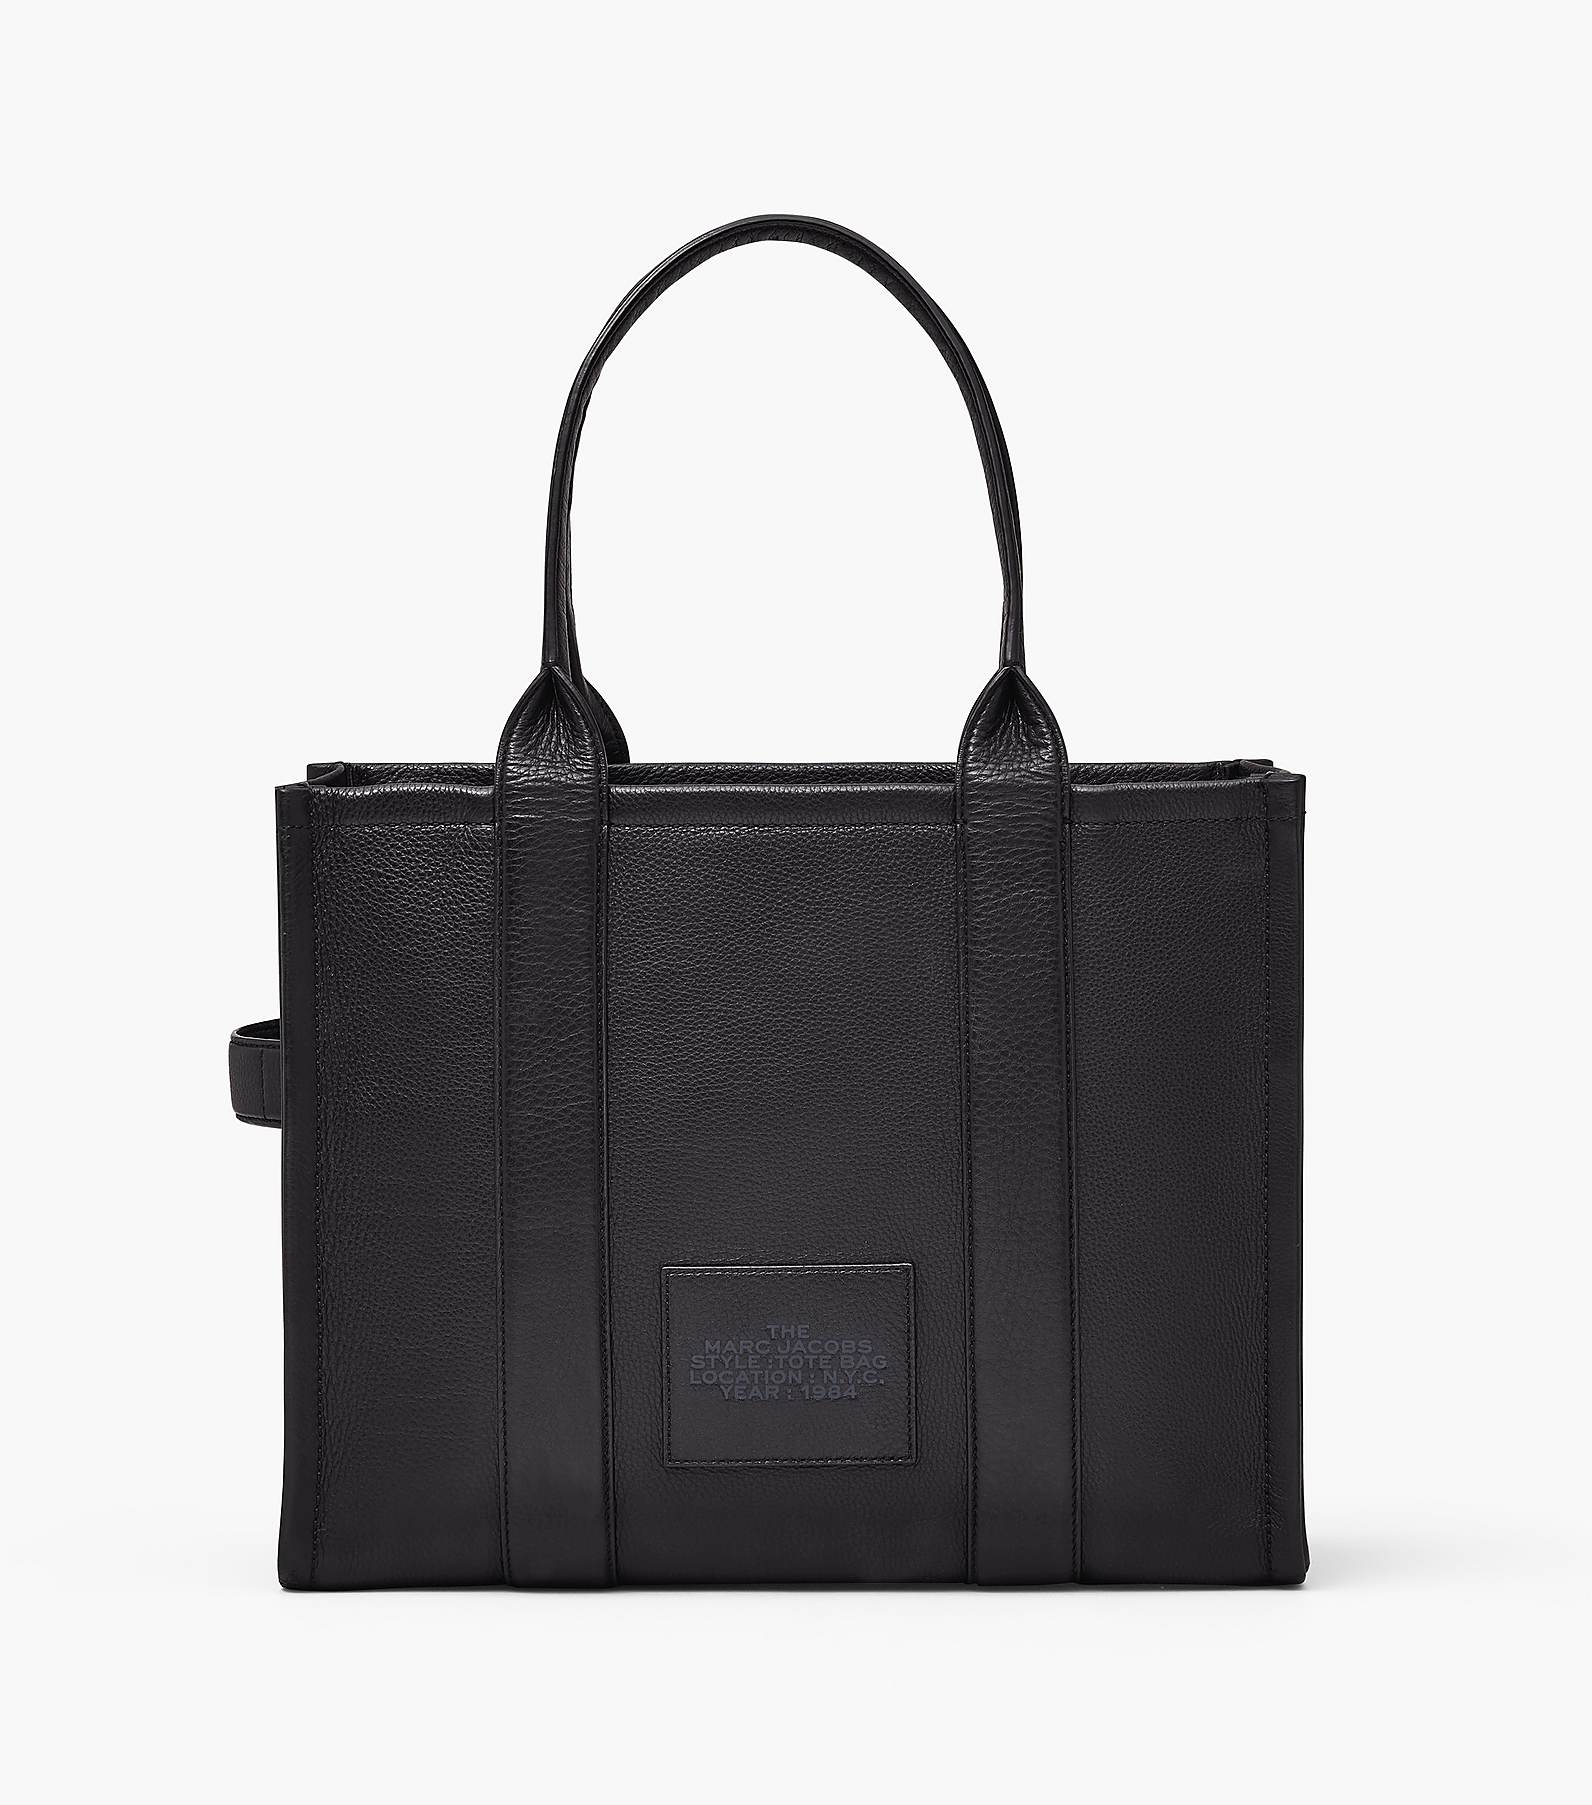 16,100円The Tote Bag Marc Jacobs Leather Edition